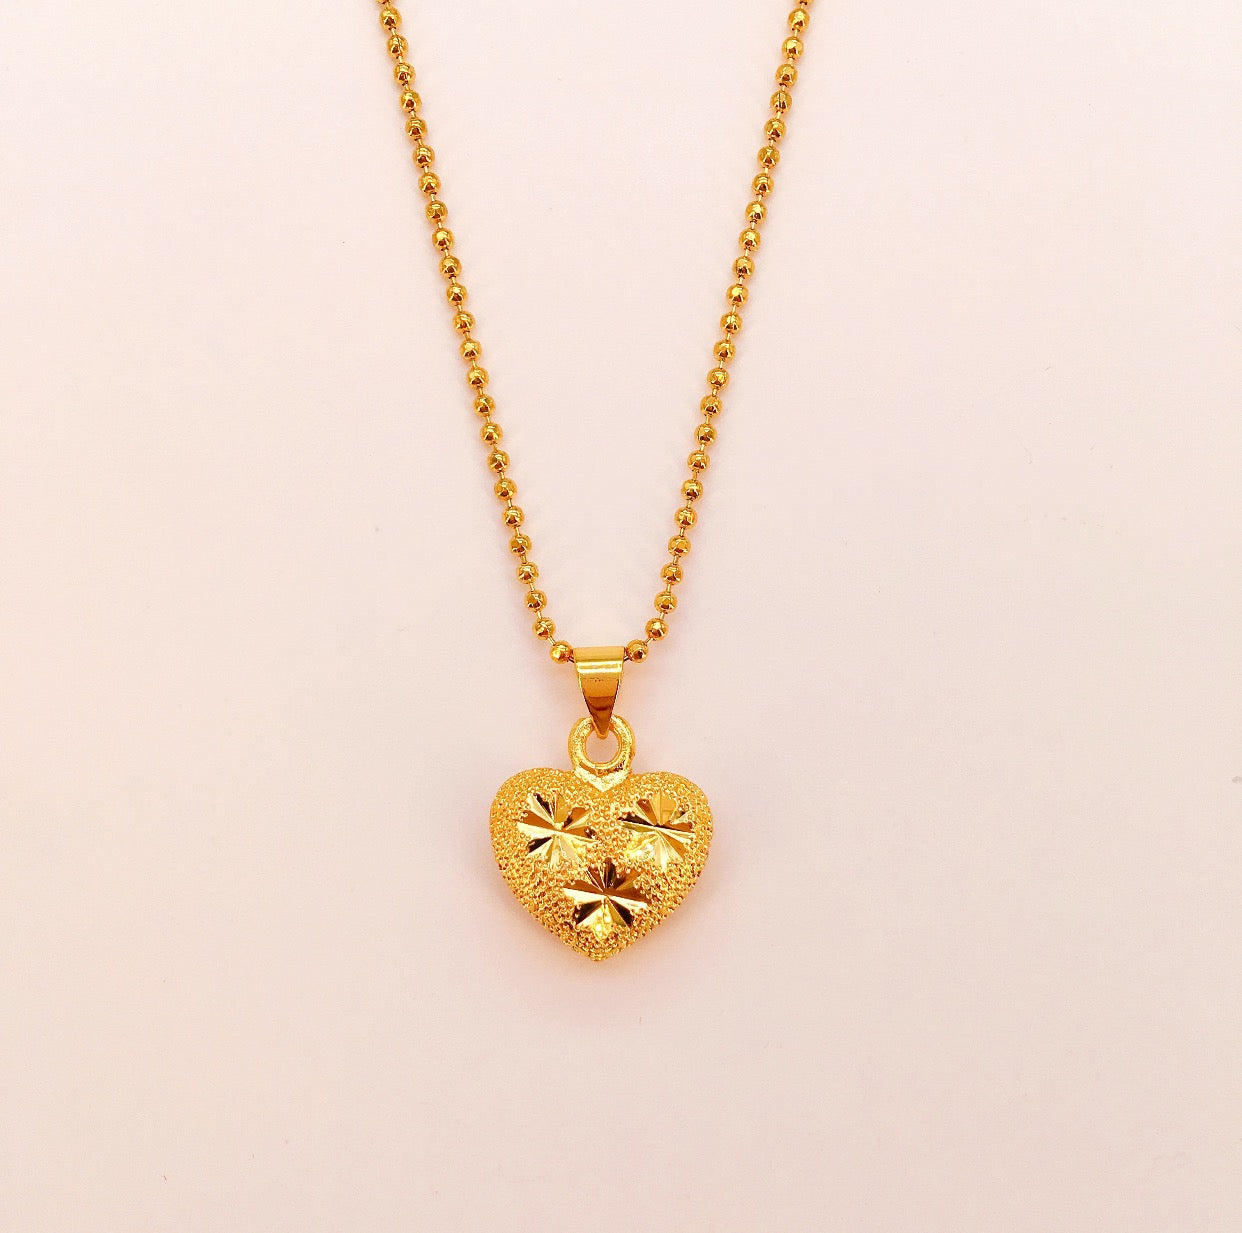 Class A 24K Bangkok Gold Heart / Ball / Virgin Mary Necklace